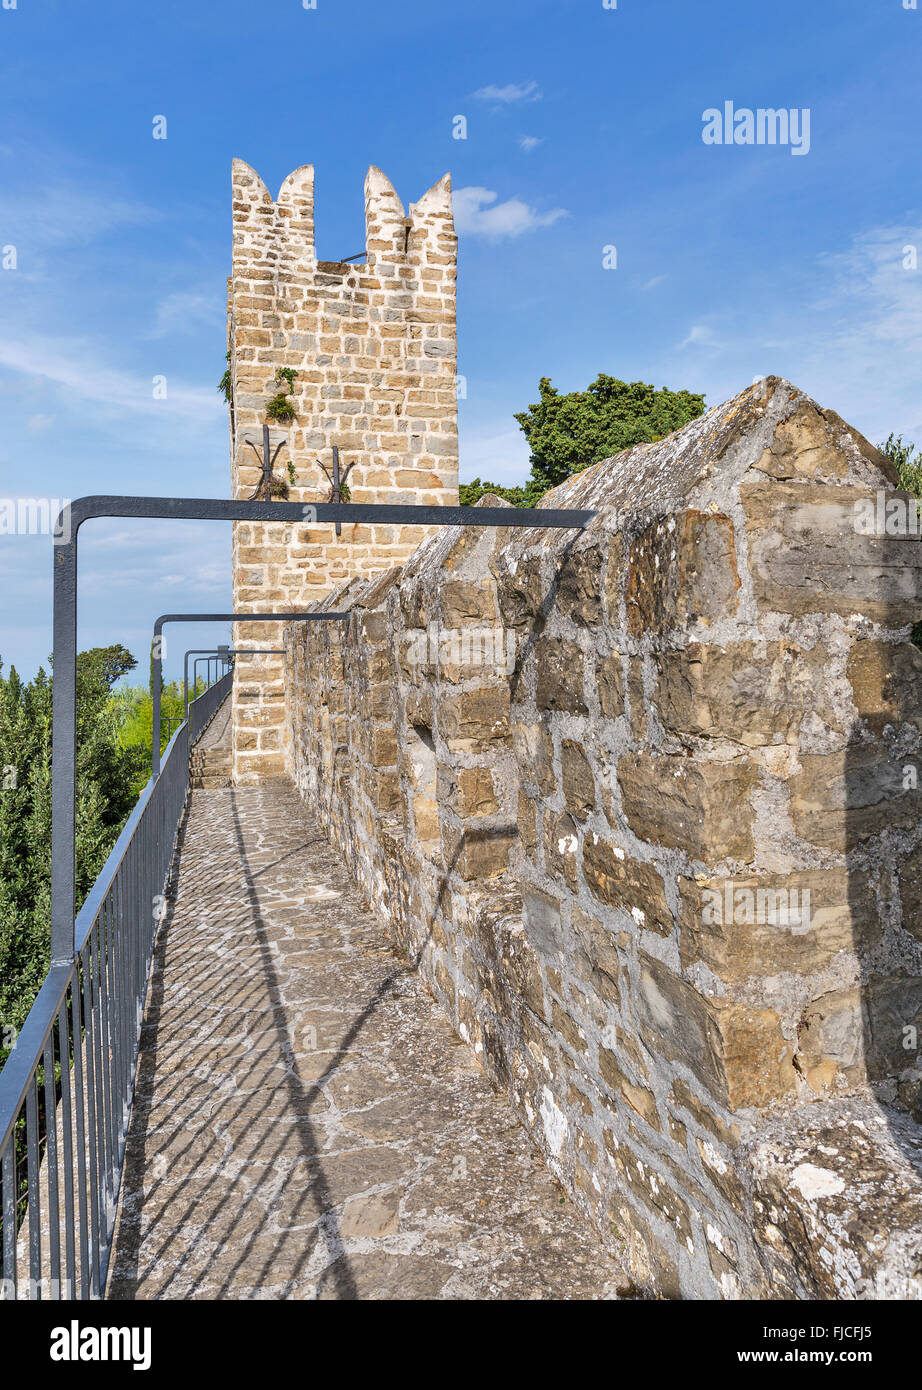 La vieille ville de Piran, Slovénie murs fortifié médiéval. Banque D'Images